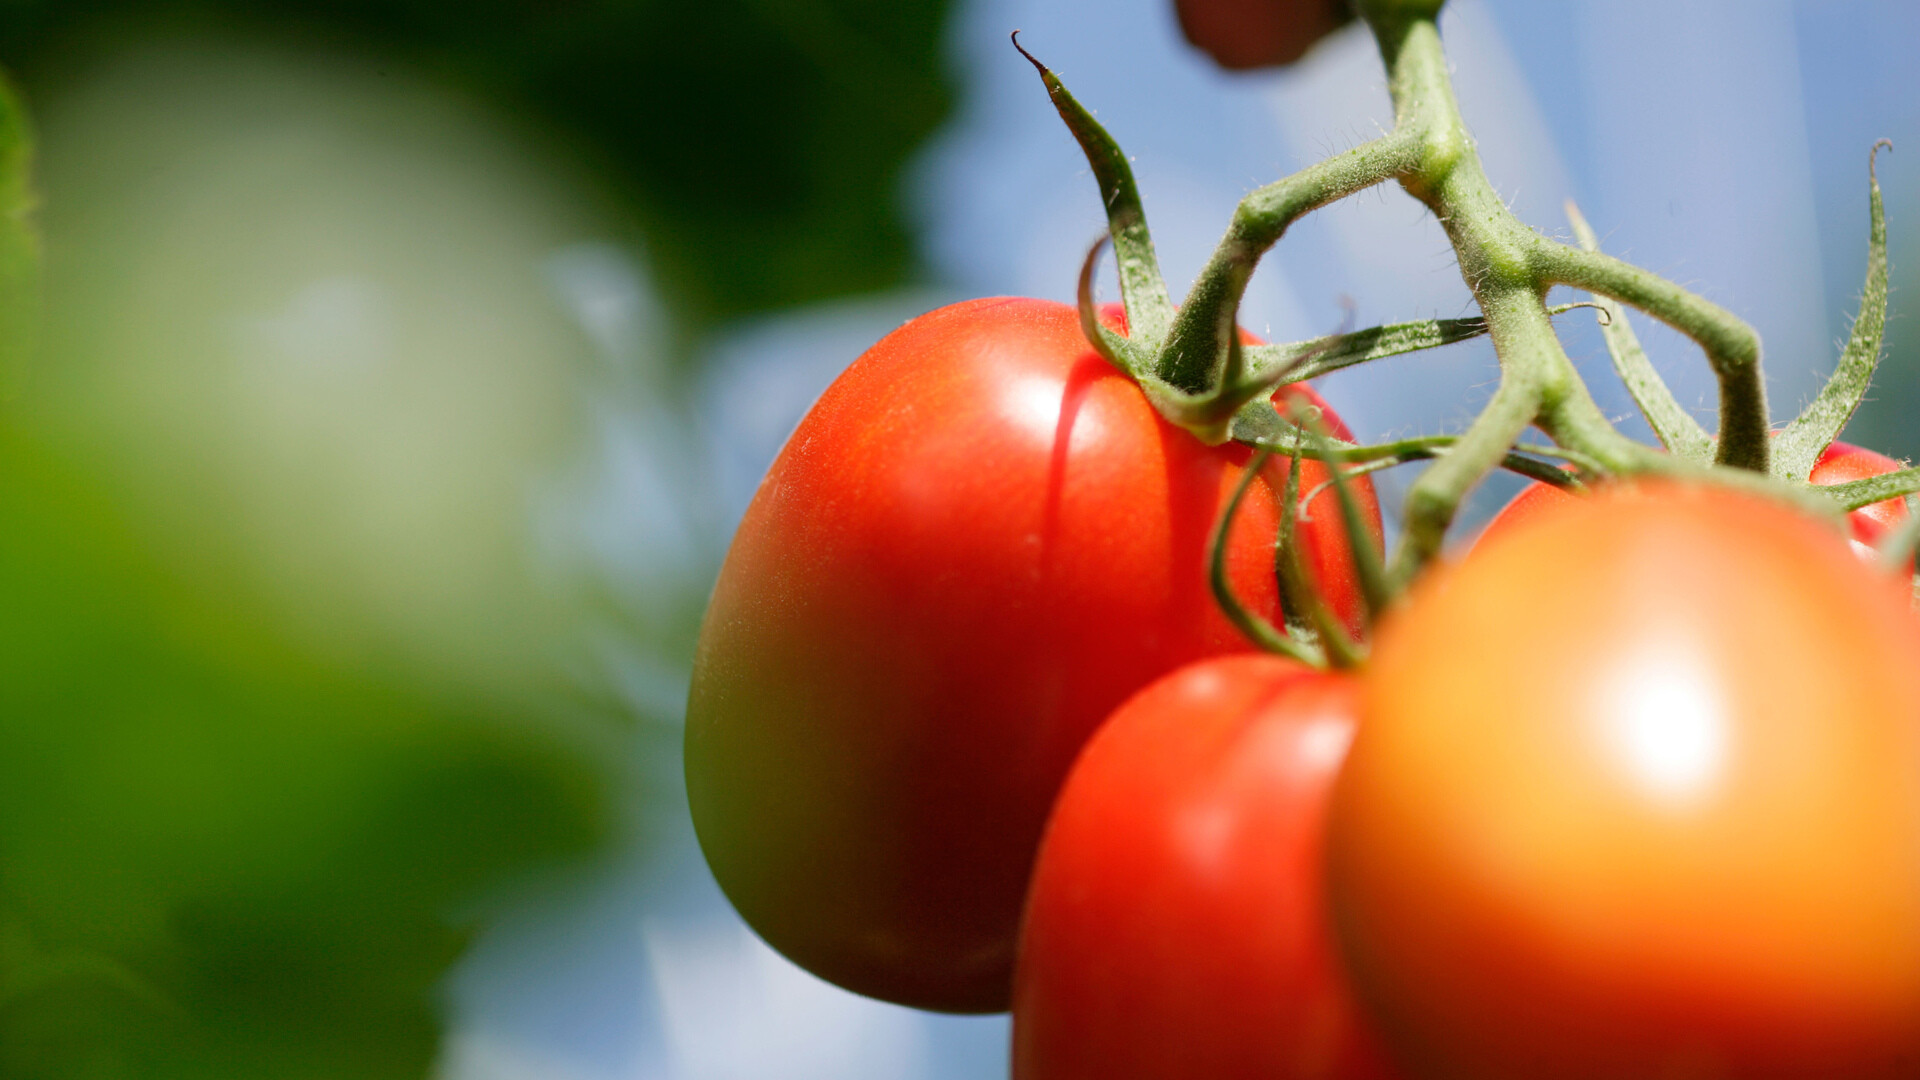 Tomatoes grown in Grodan